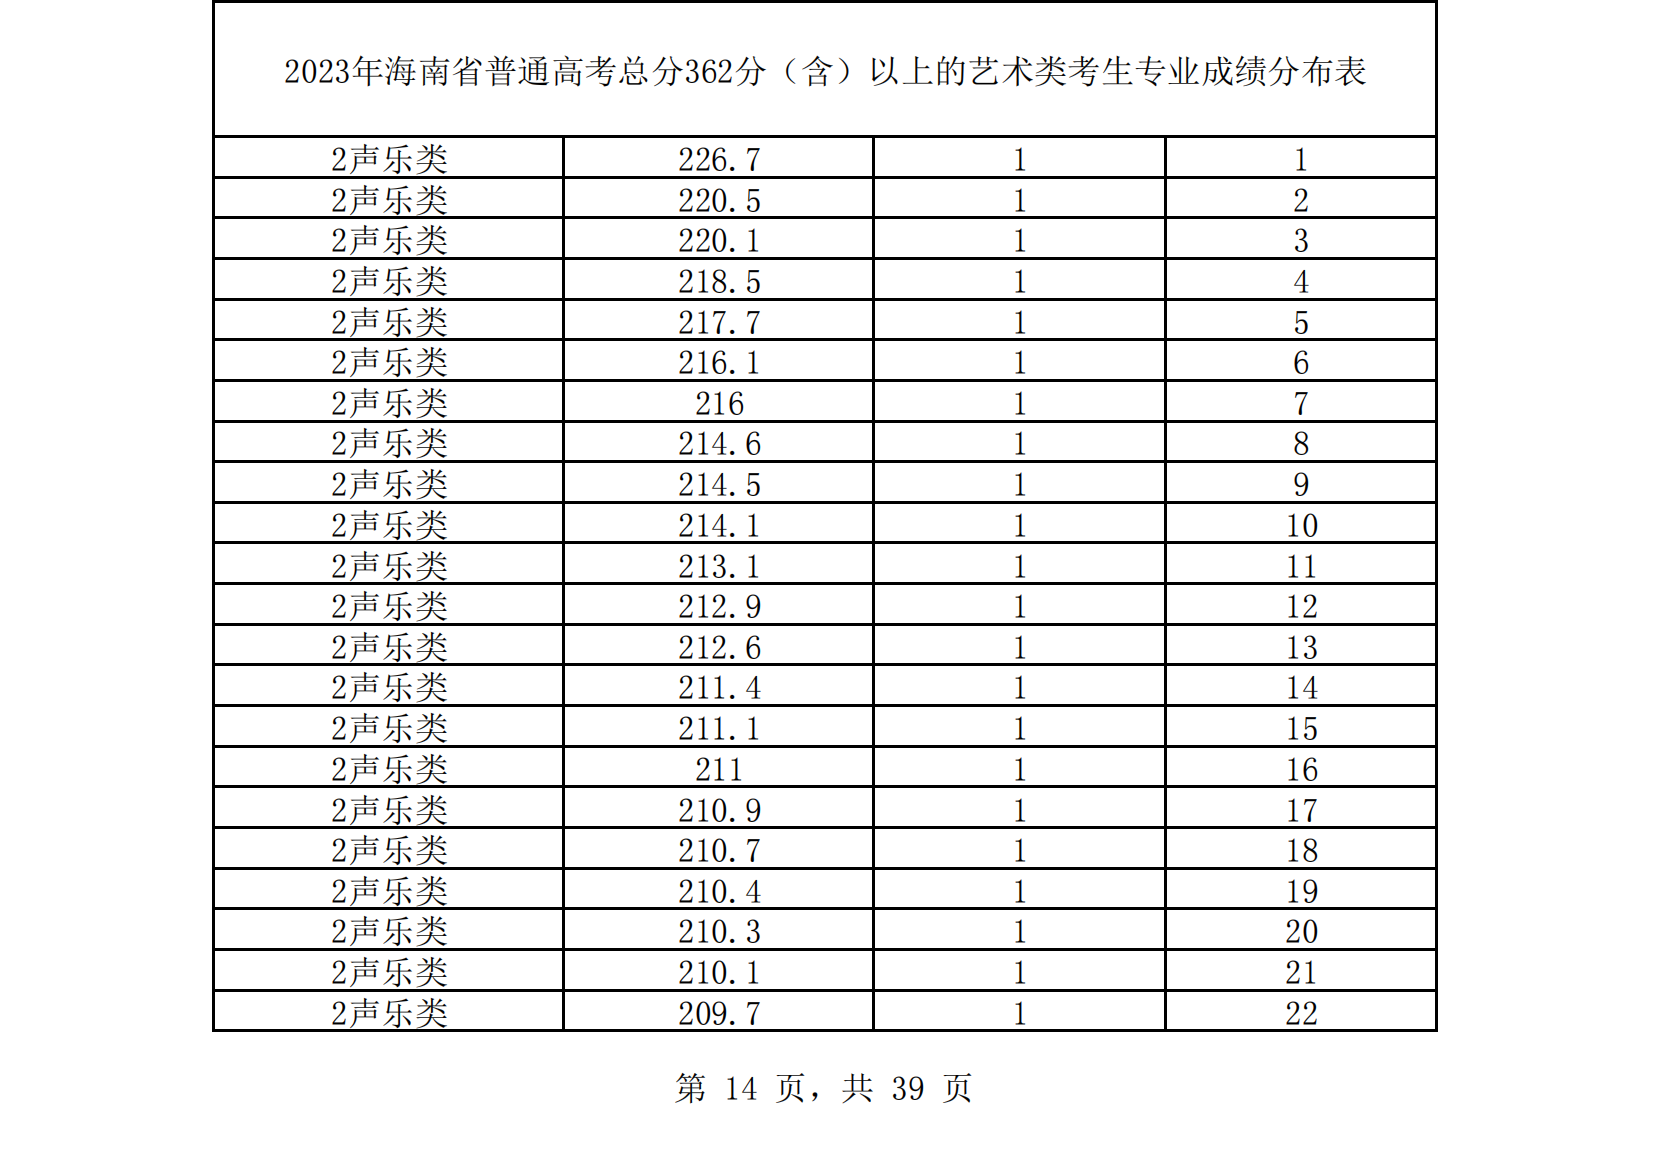 2023年海南省普通高考总分362（含）以上的艺术类音乐、舞蹈考生专业成绩分布表